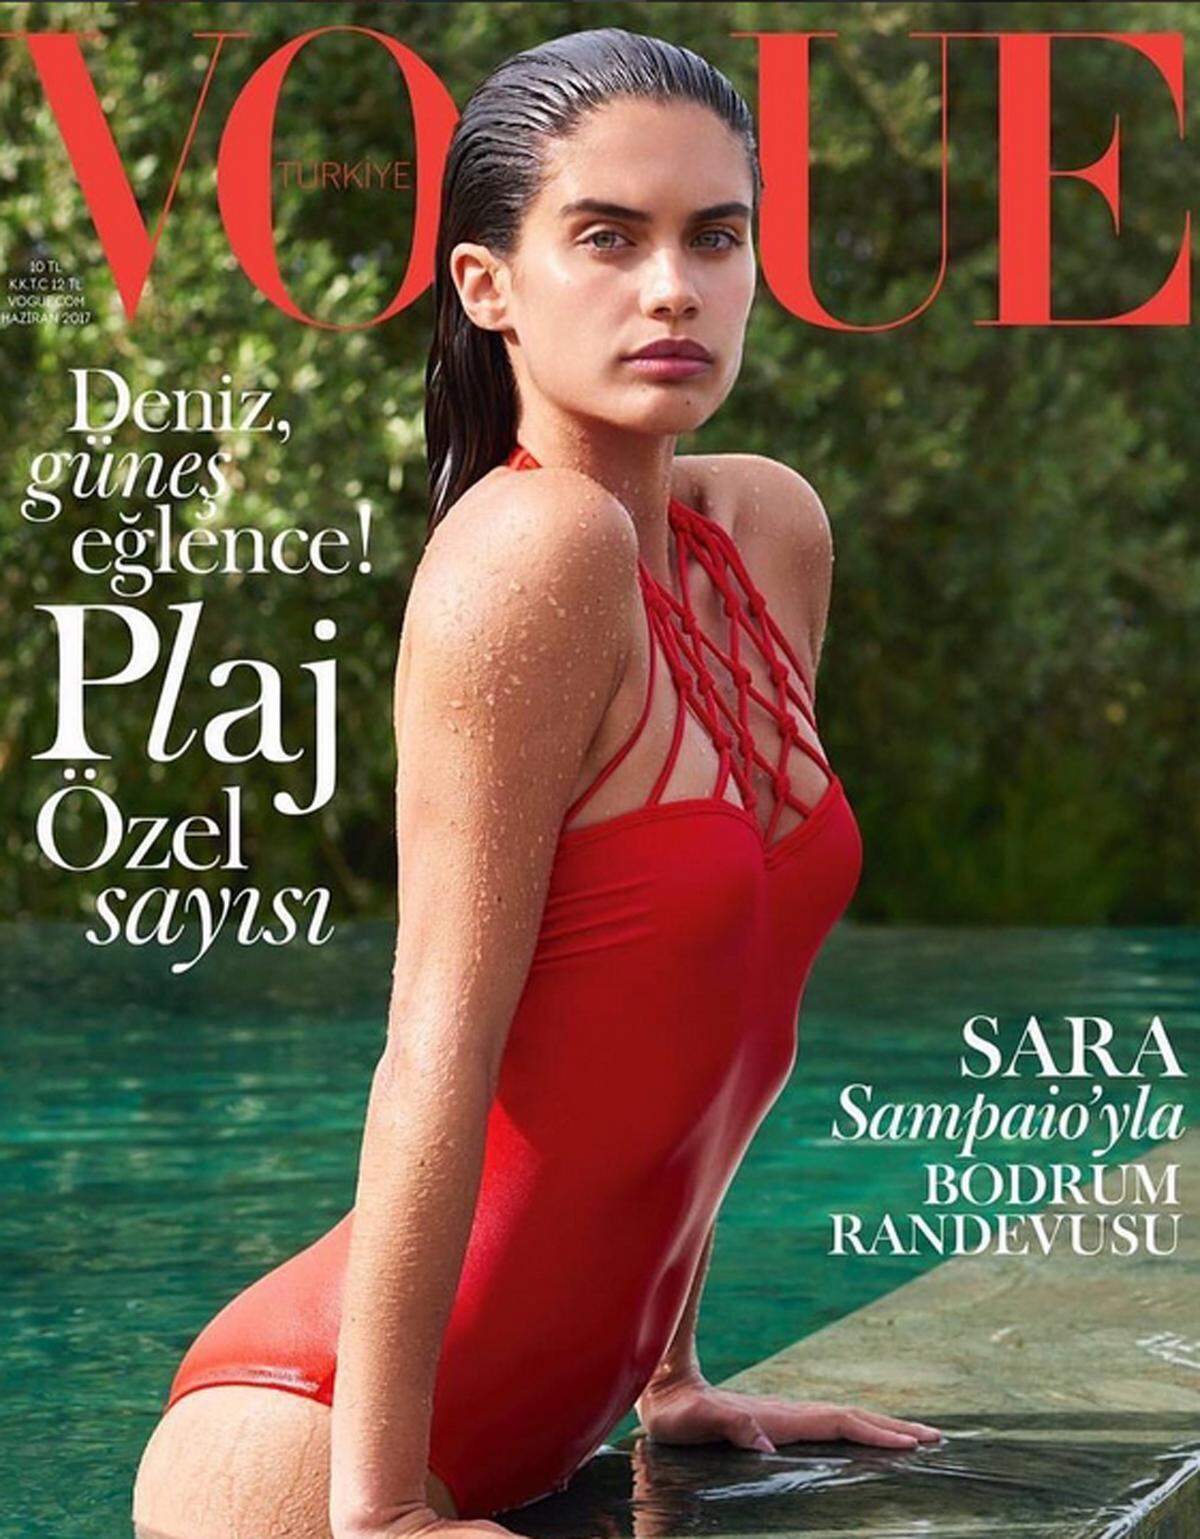 Auf dem Titelbild der "Vogue" sticht Model Sara Sampaio ins Auge.